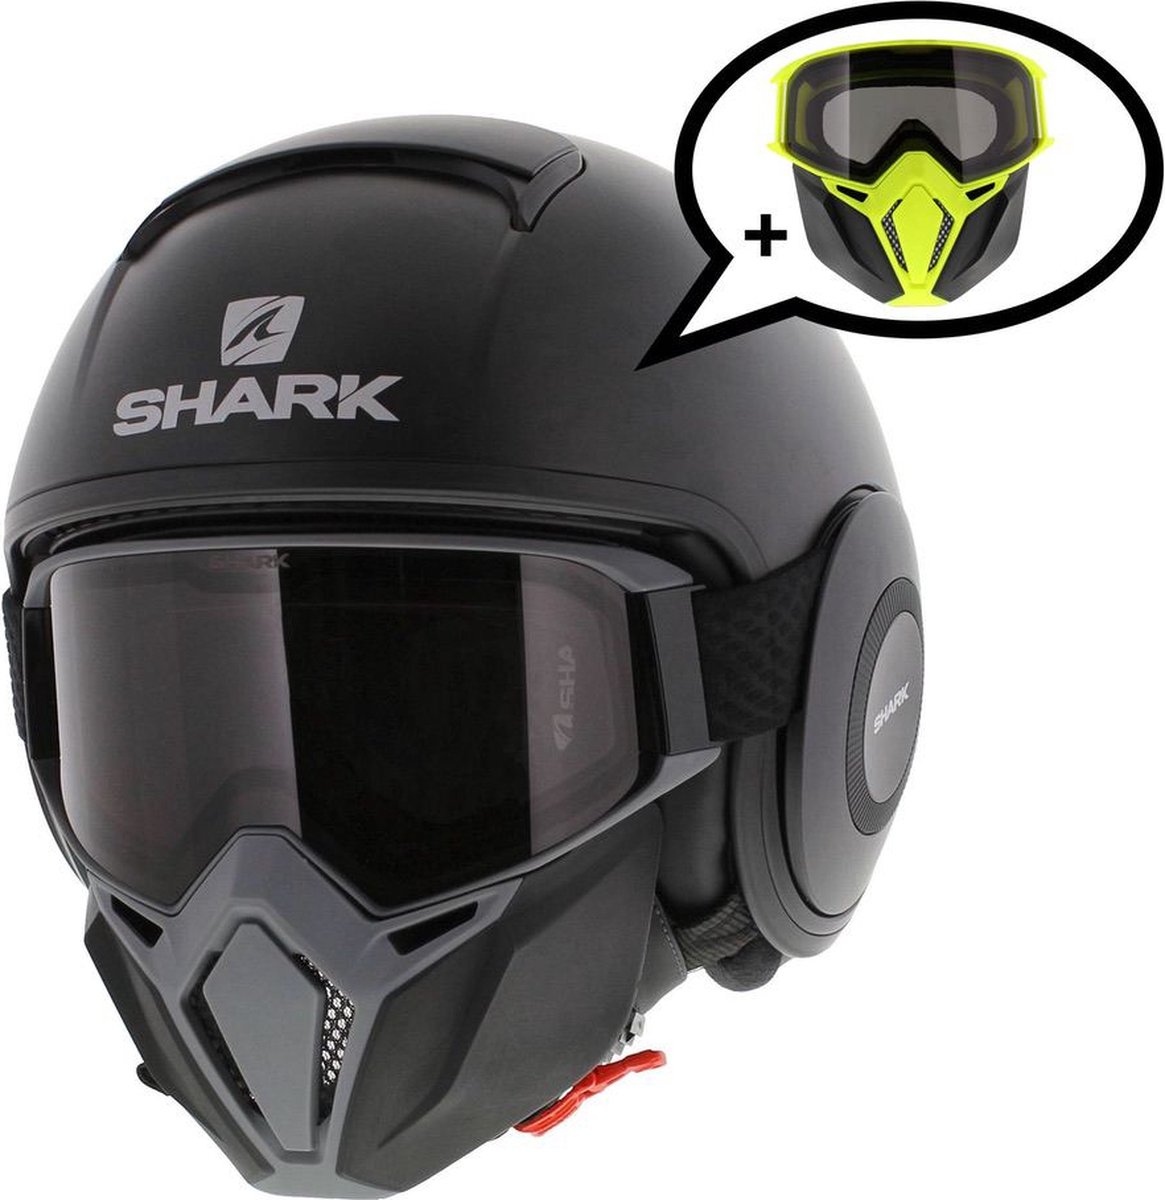 Shark Street Drak helm mat zwart antraciet L - Special Edition met gratis extra zwart geel mondstuk